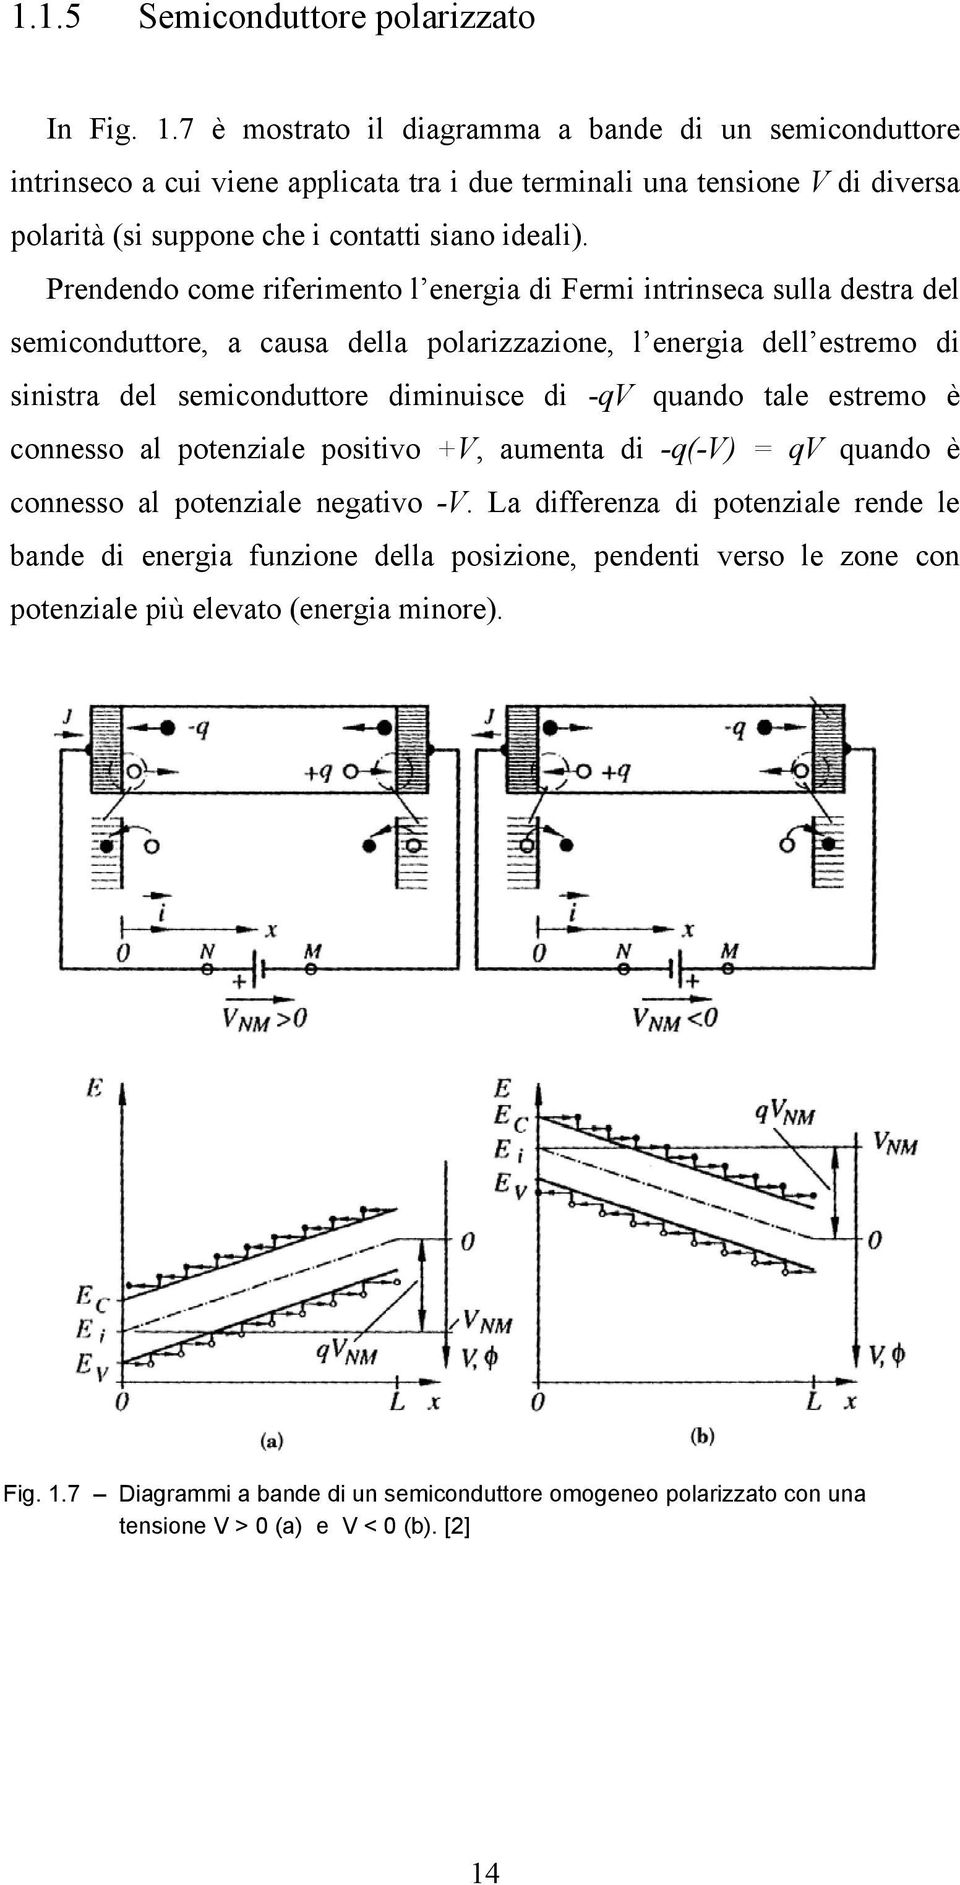 Prendendo come riferimento l energia di Fermi intrinseca sulla destra del semiconduttore, a causa della polarizzazione, l energia dell estremo di sinistra del semiconduttore diminuisce di -qv quando